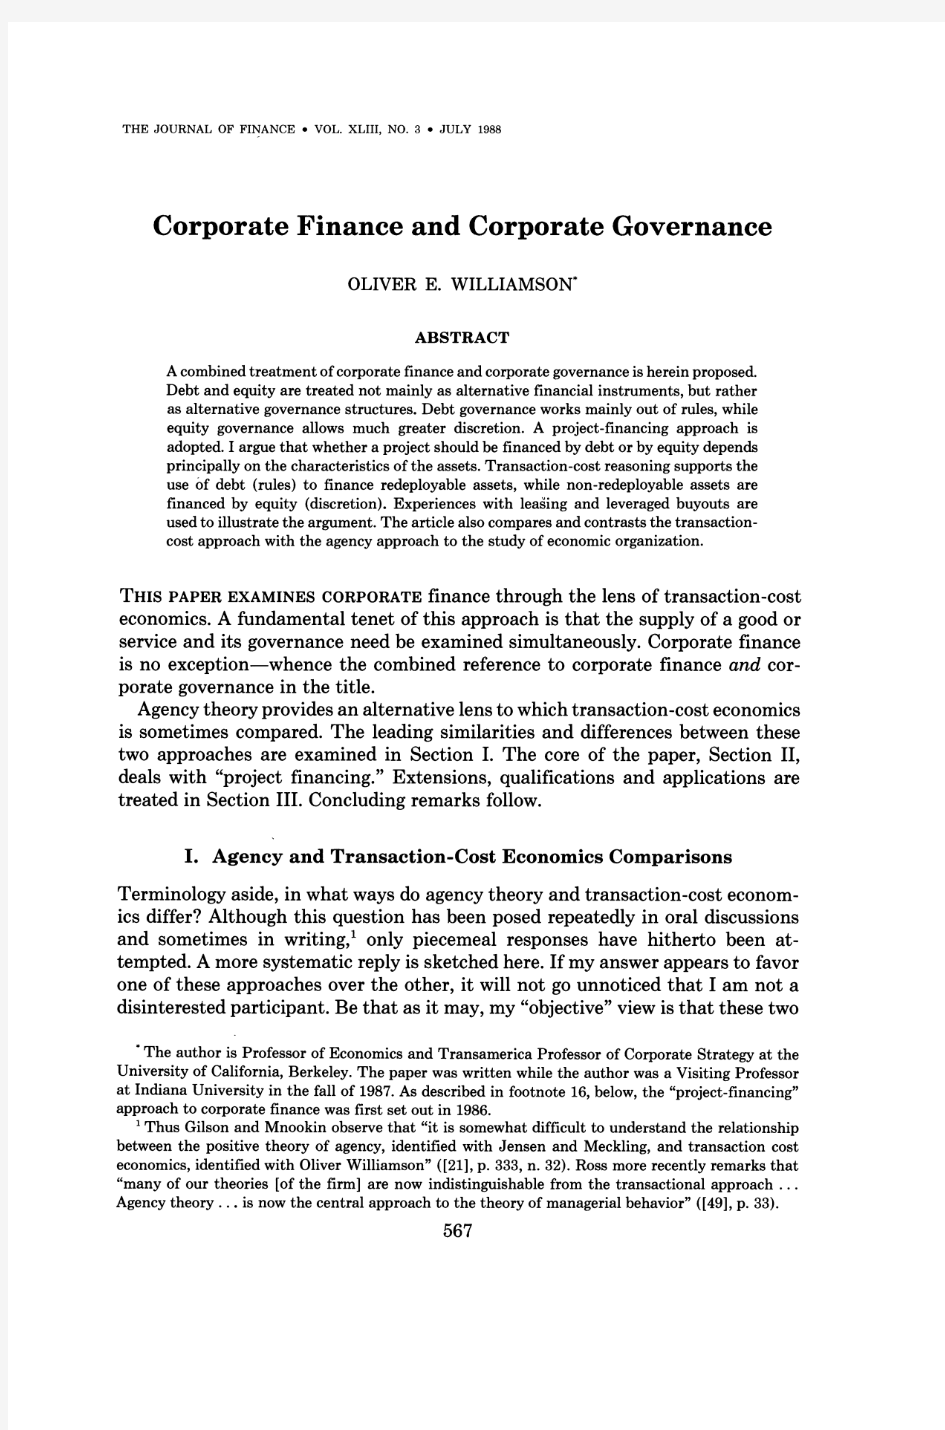 Williamson公司融资与公司治理JF43(1988)0567-591